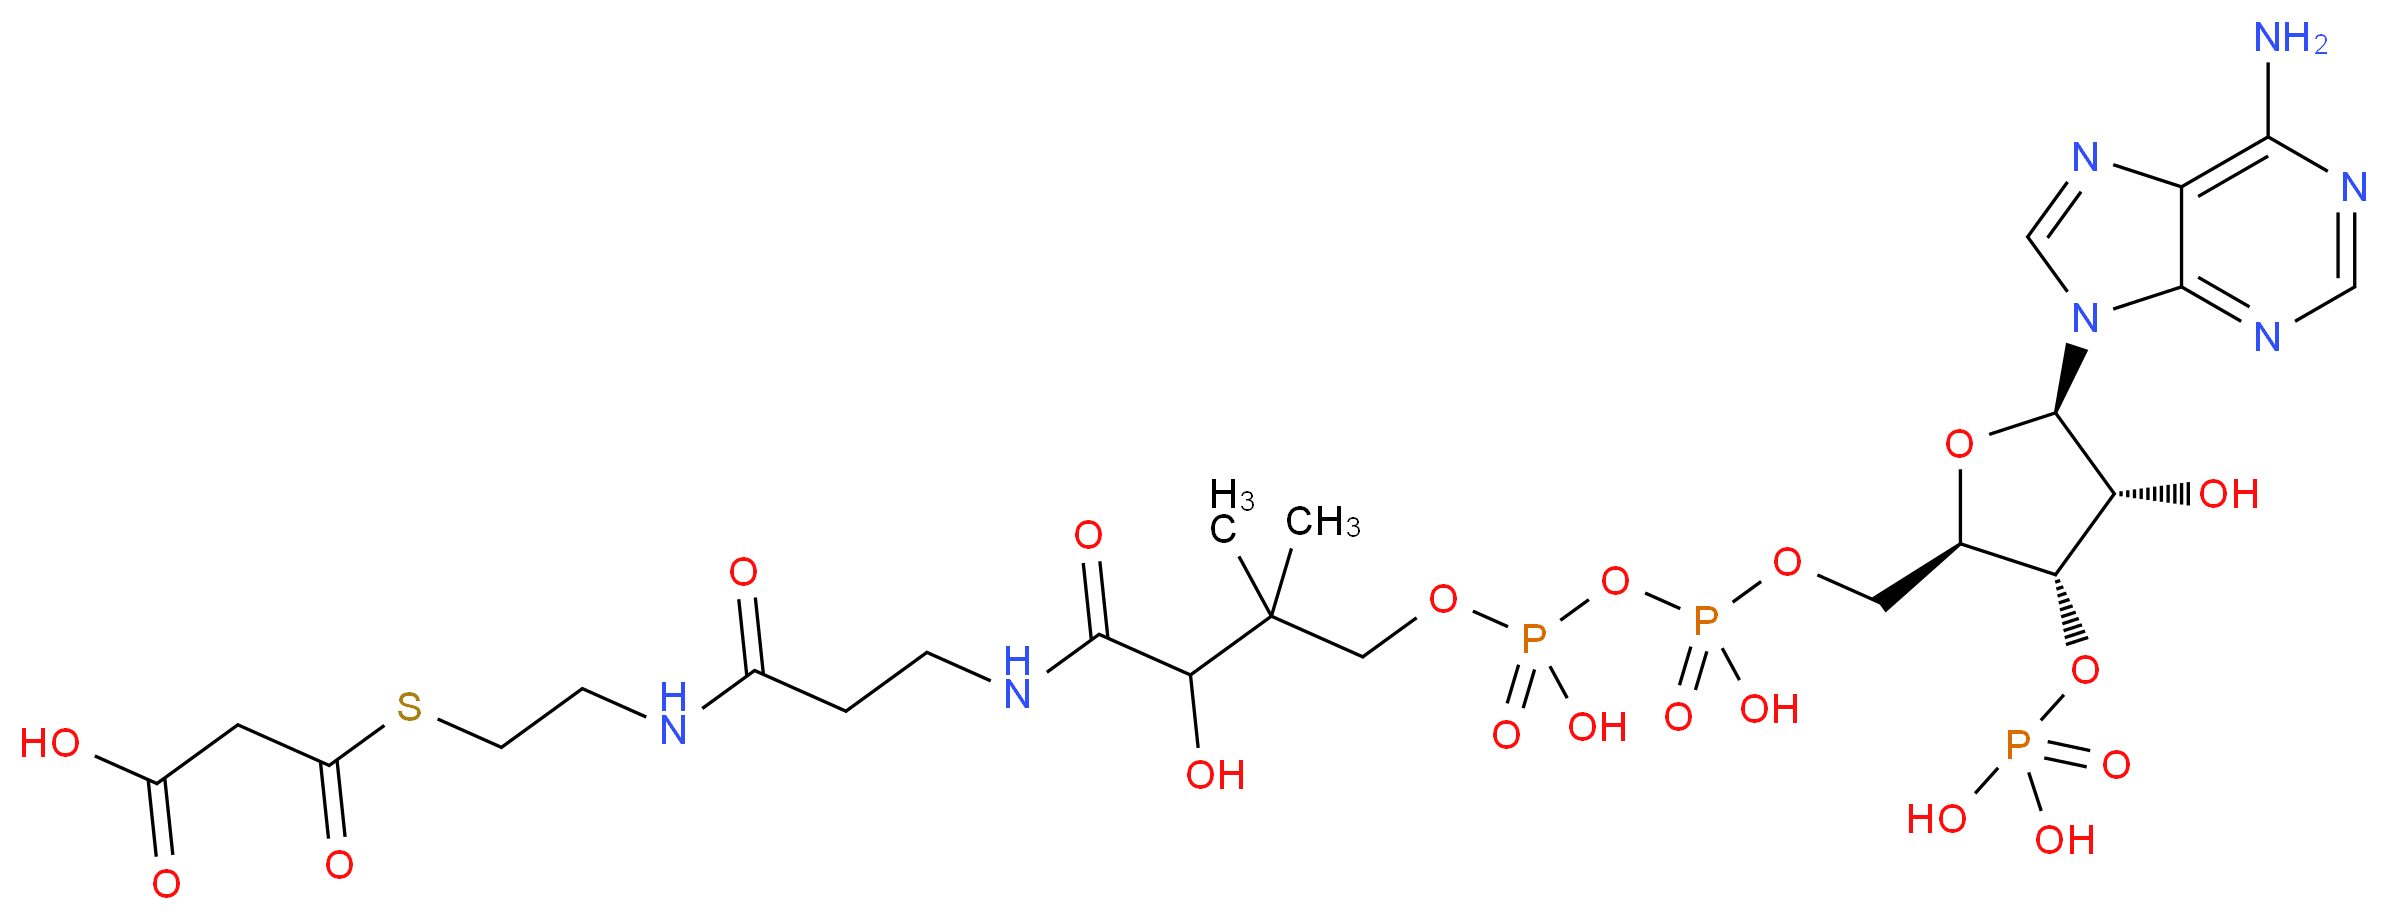 Malonyl-CoA_Molecular_structure_CAS_524-14-1)